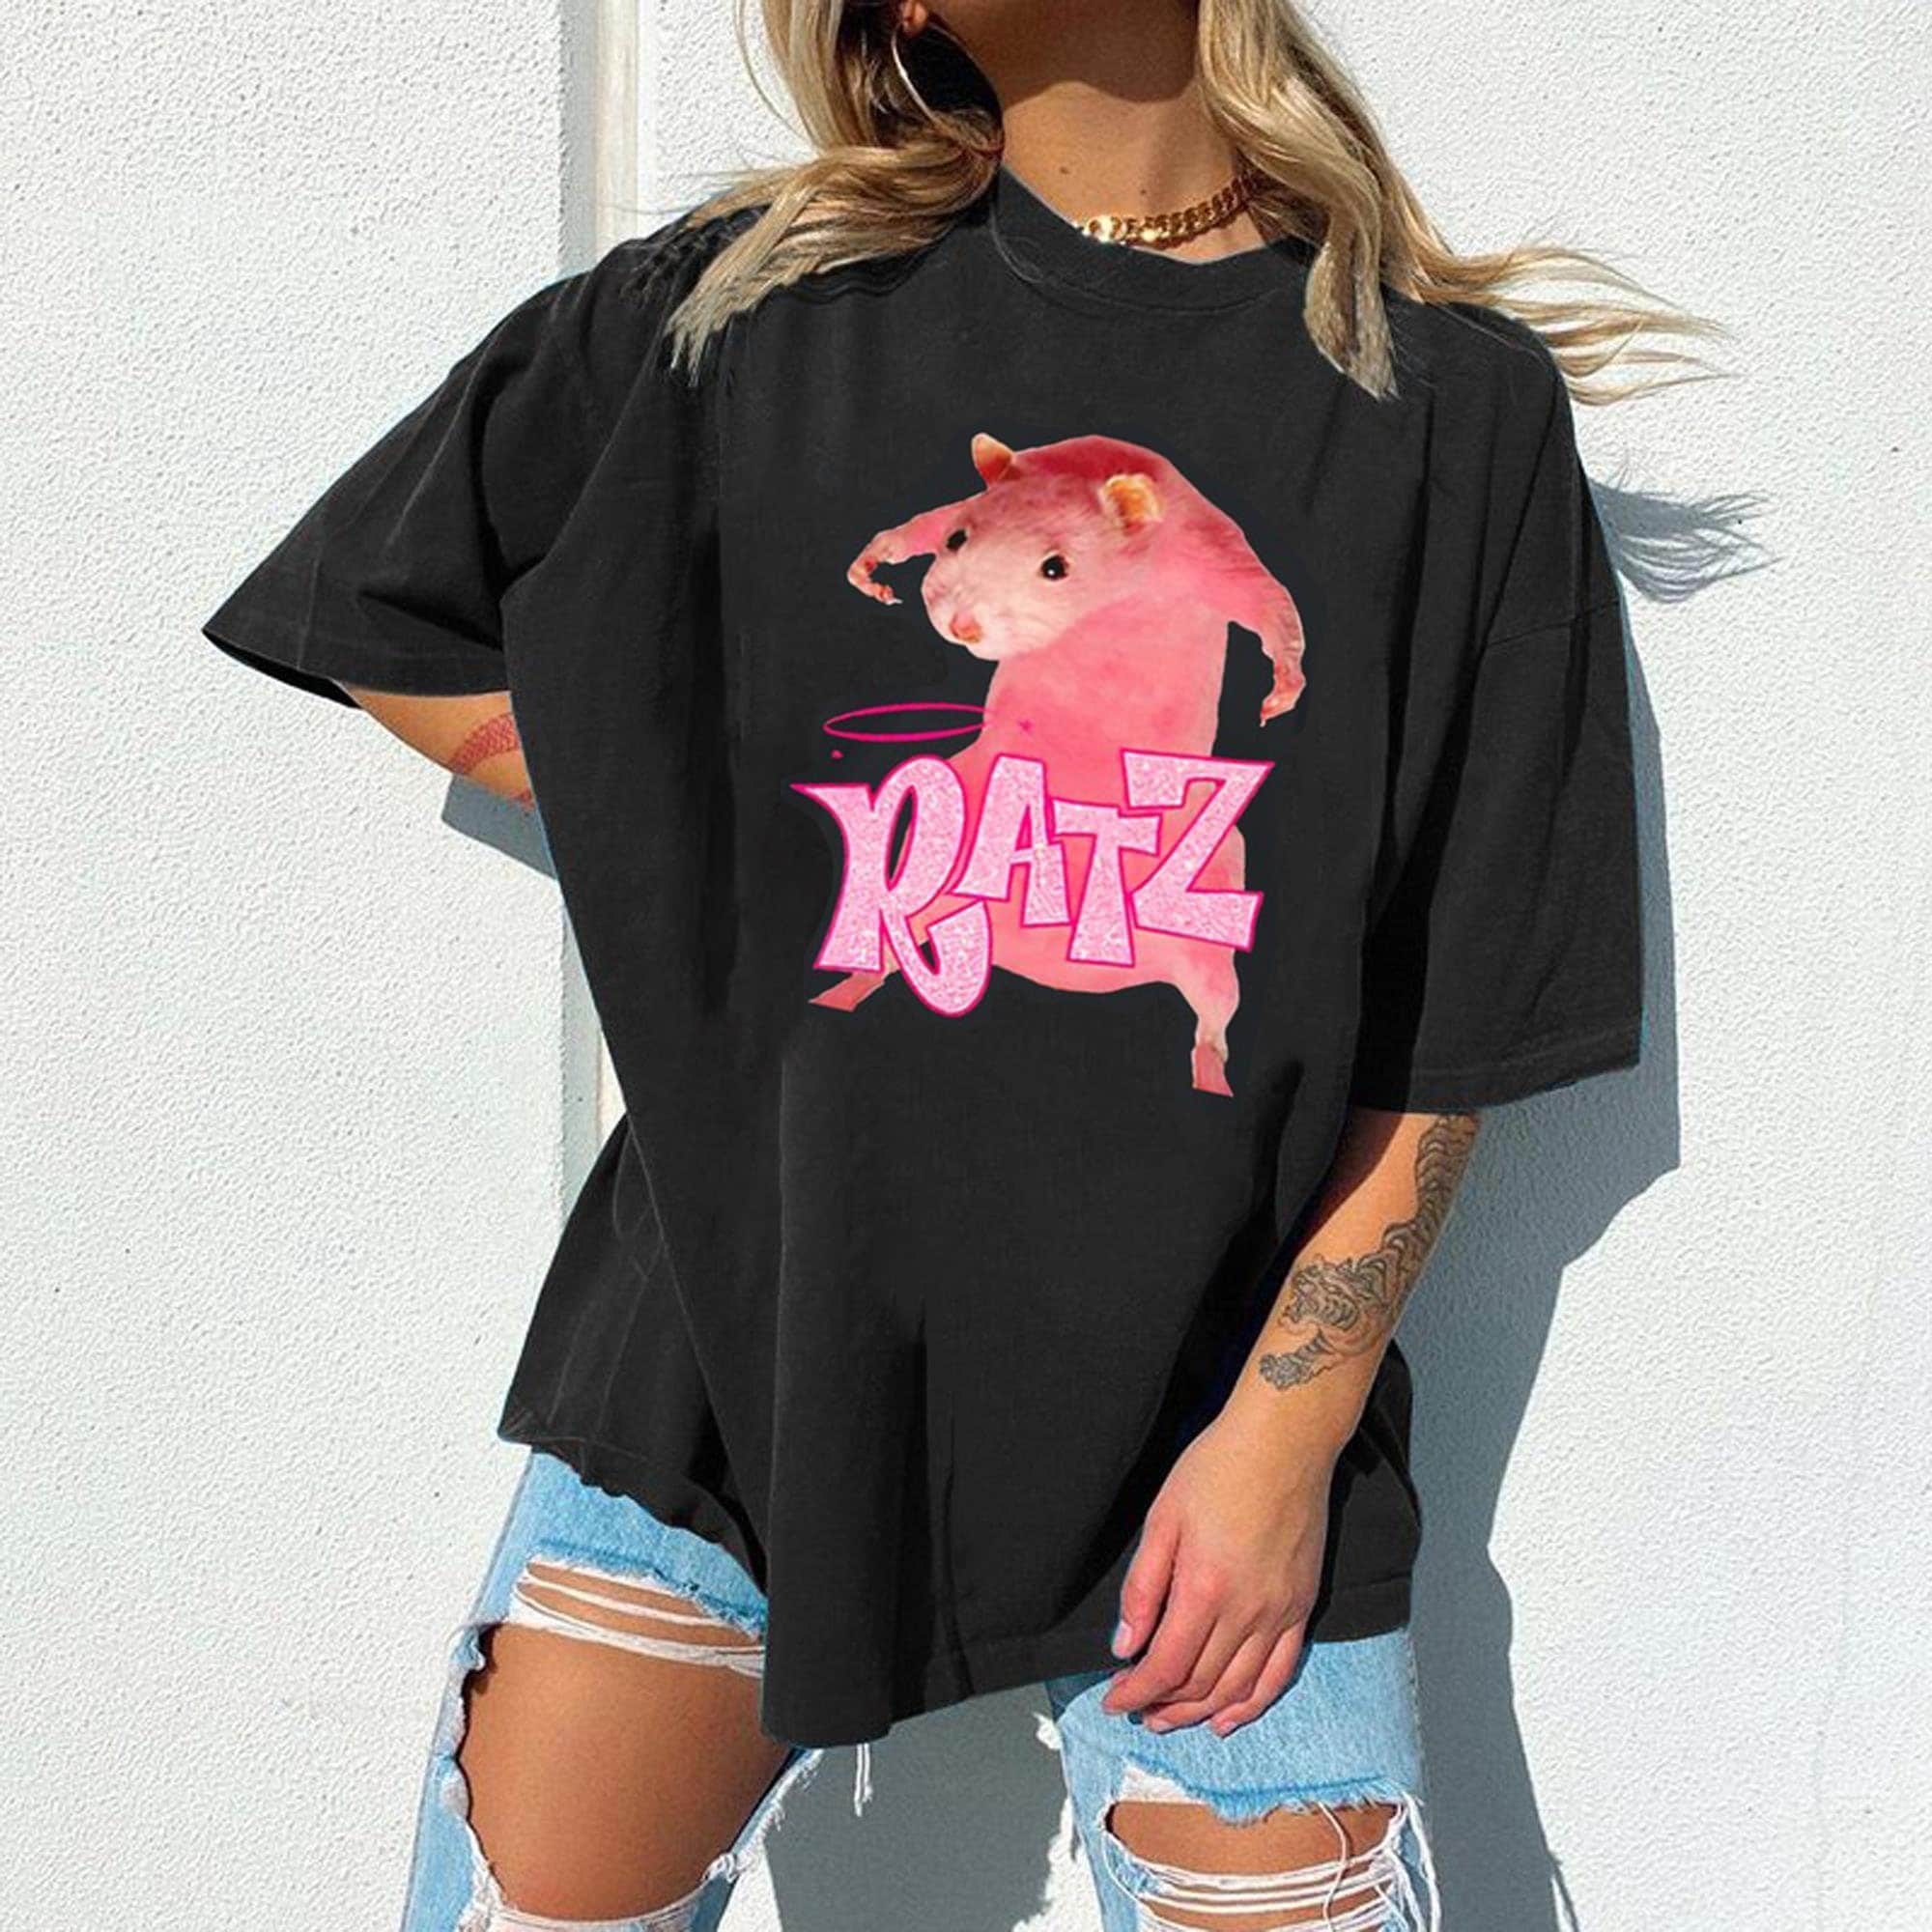 Ratz Shirt, Mouse Bratz shirt, Ratz Pink Mouse Magical Cheese Unisex T-shirt